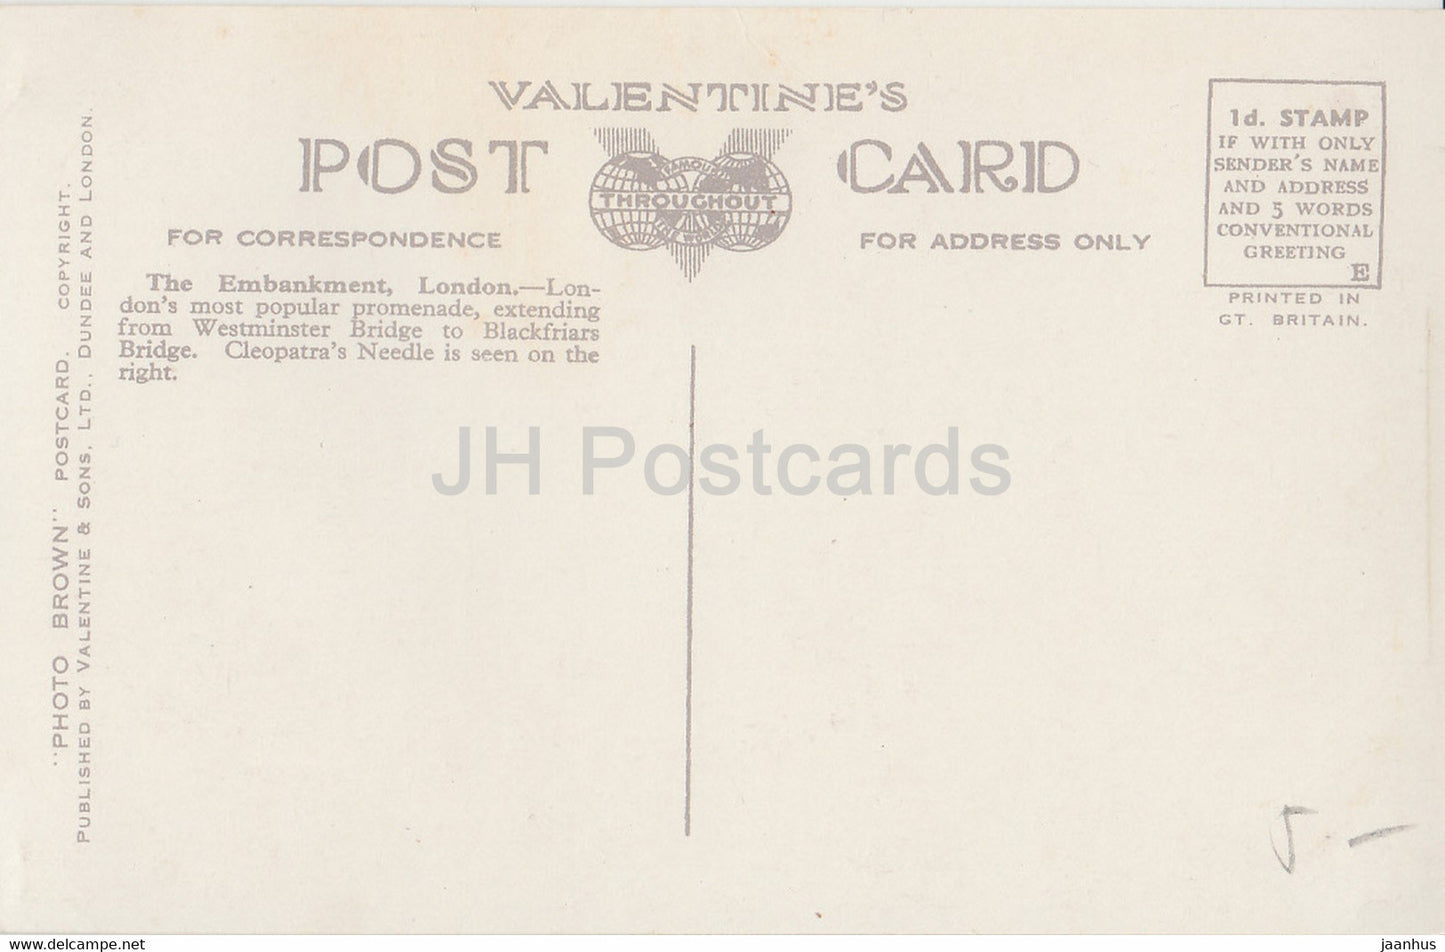 London - Thames Embankment - tram - car - Valentine - 2566 - old postcard - England - United Kingdom - unused